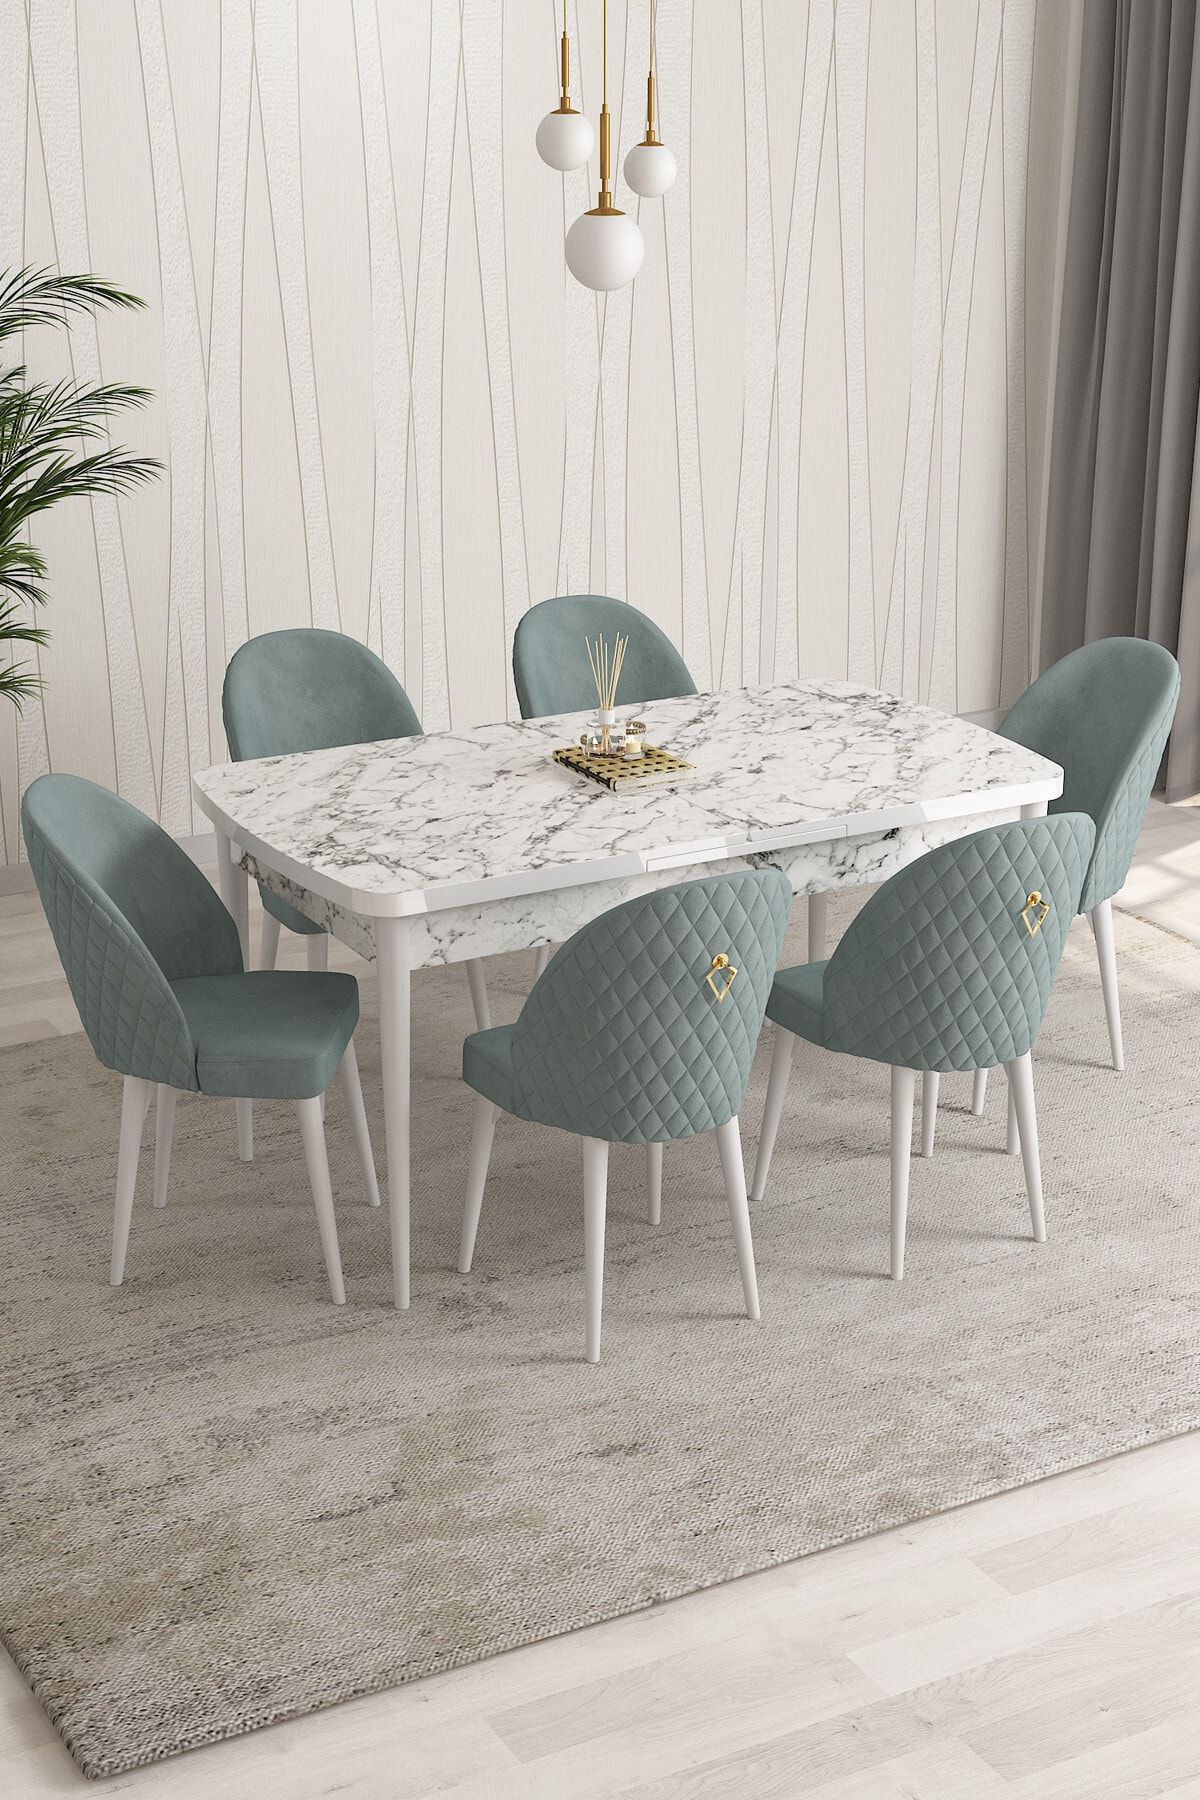 Rovena Modica Beyaz Mermer Desen 80x132 Açılabilir Yemek Masası Takımı 6 Adet Sandalye